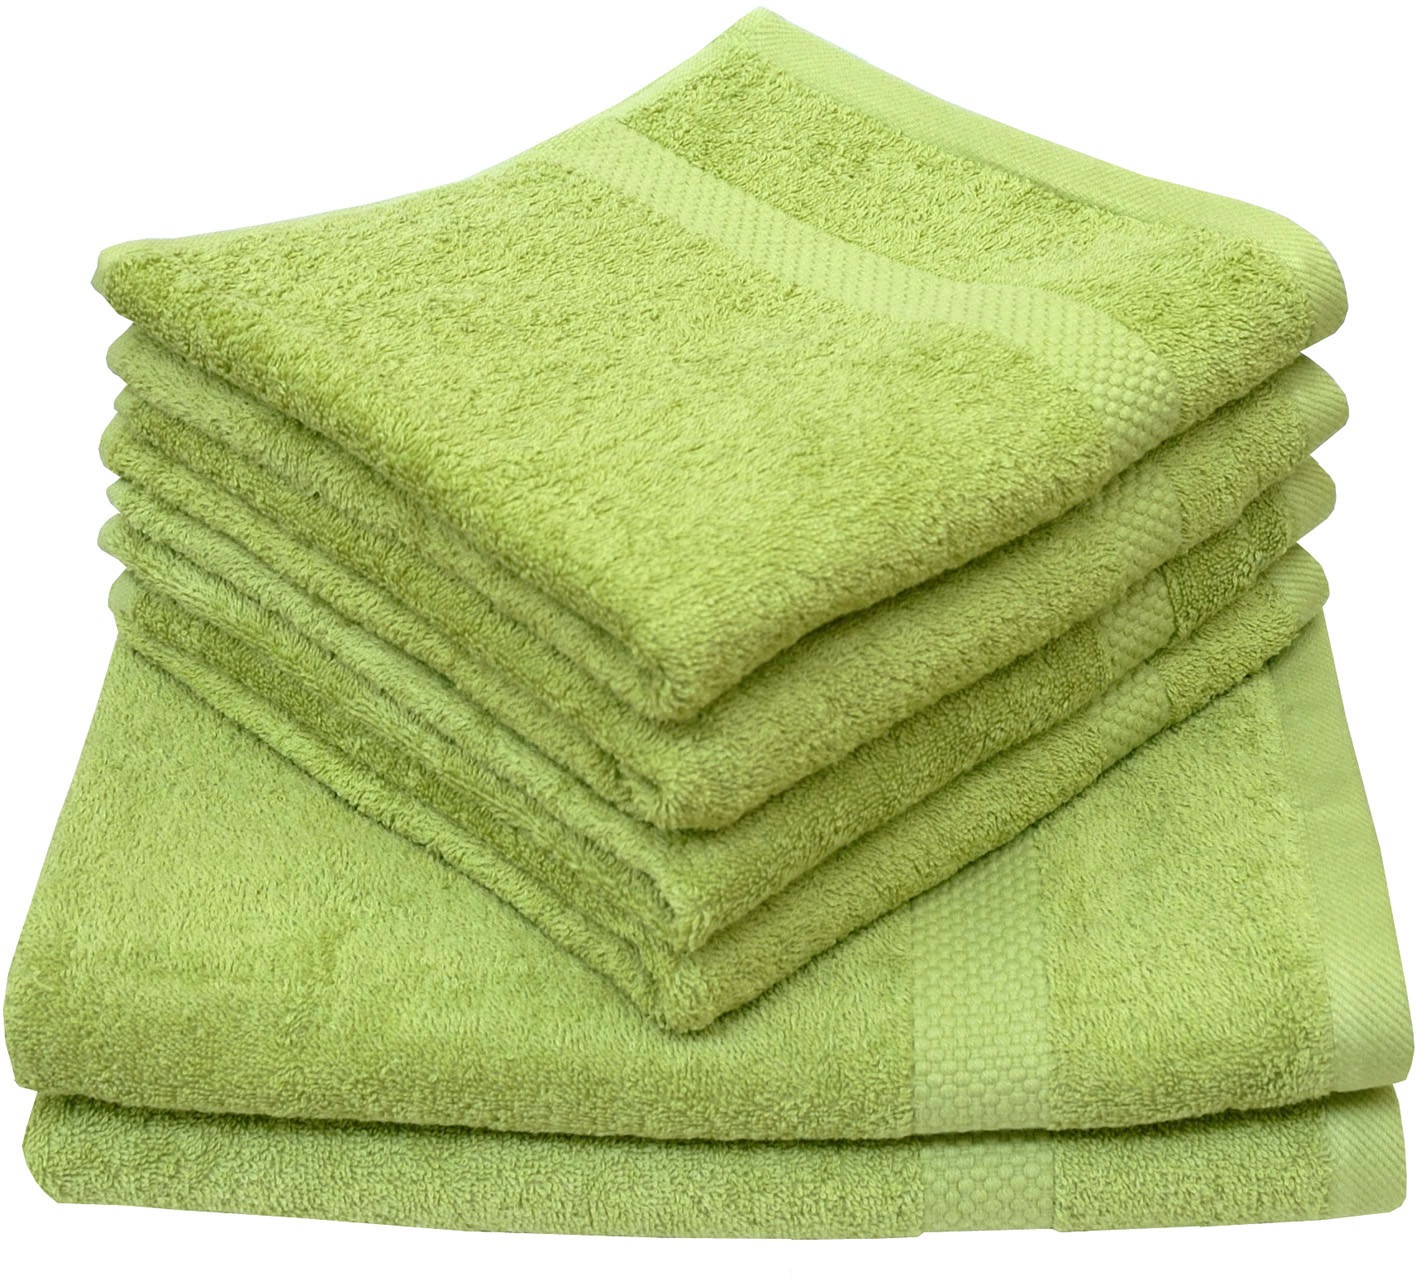 Handtuchsets in Grün Preisvergleich 24 Moebel 